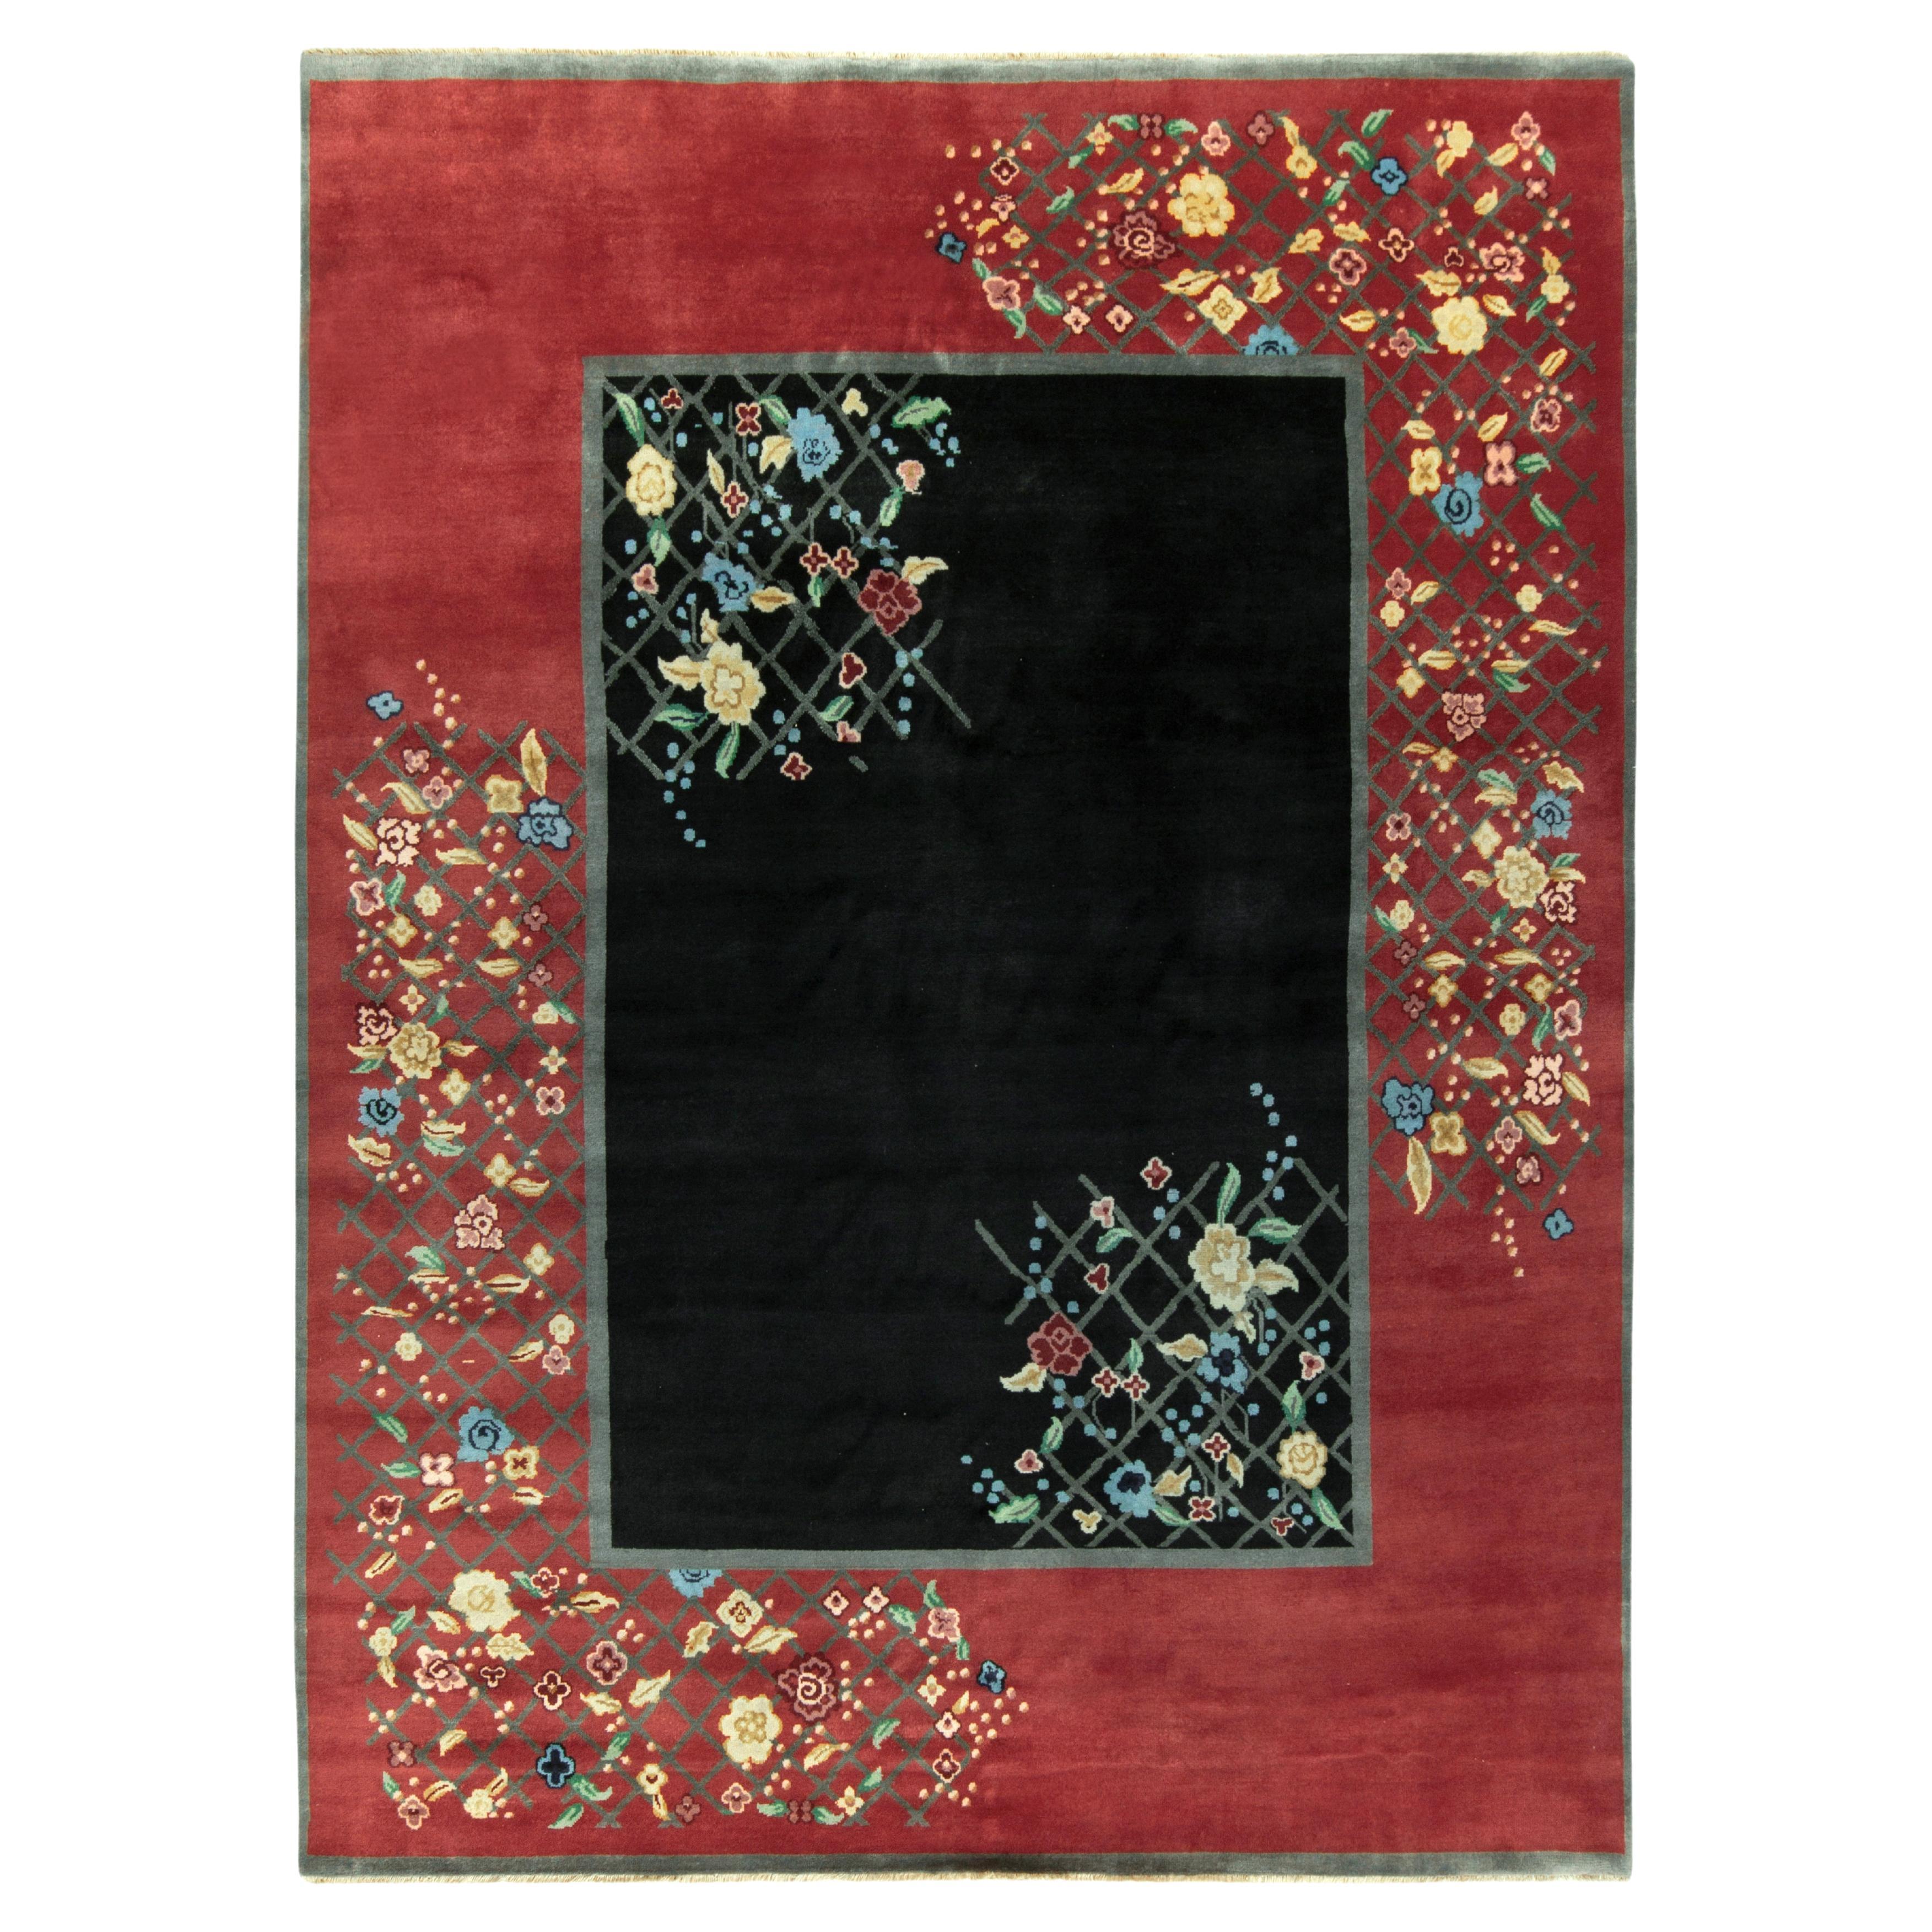 Chinesischer Deko-Teppich von Rug & Kilim in Schwarz und mit bunten Blumenmotiven